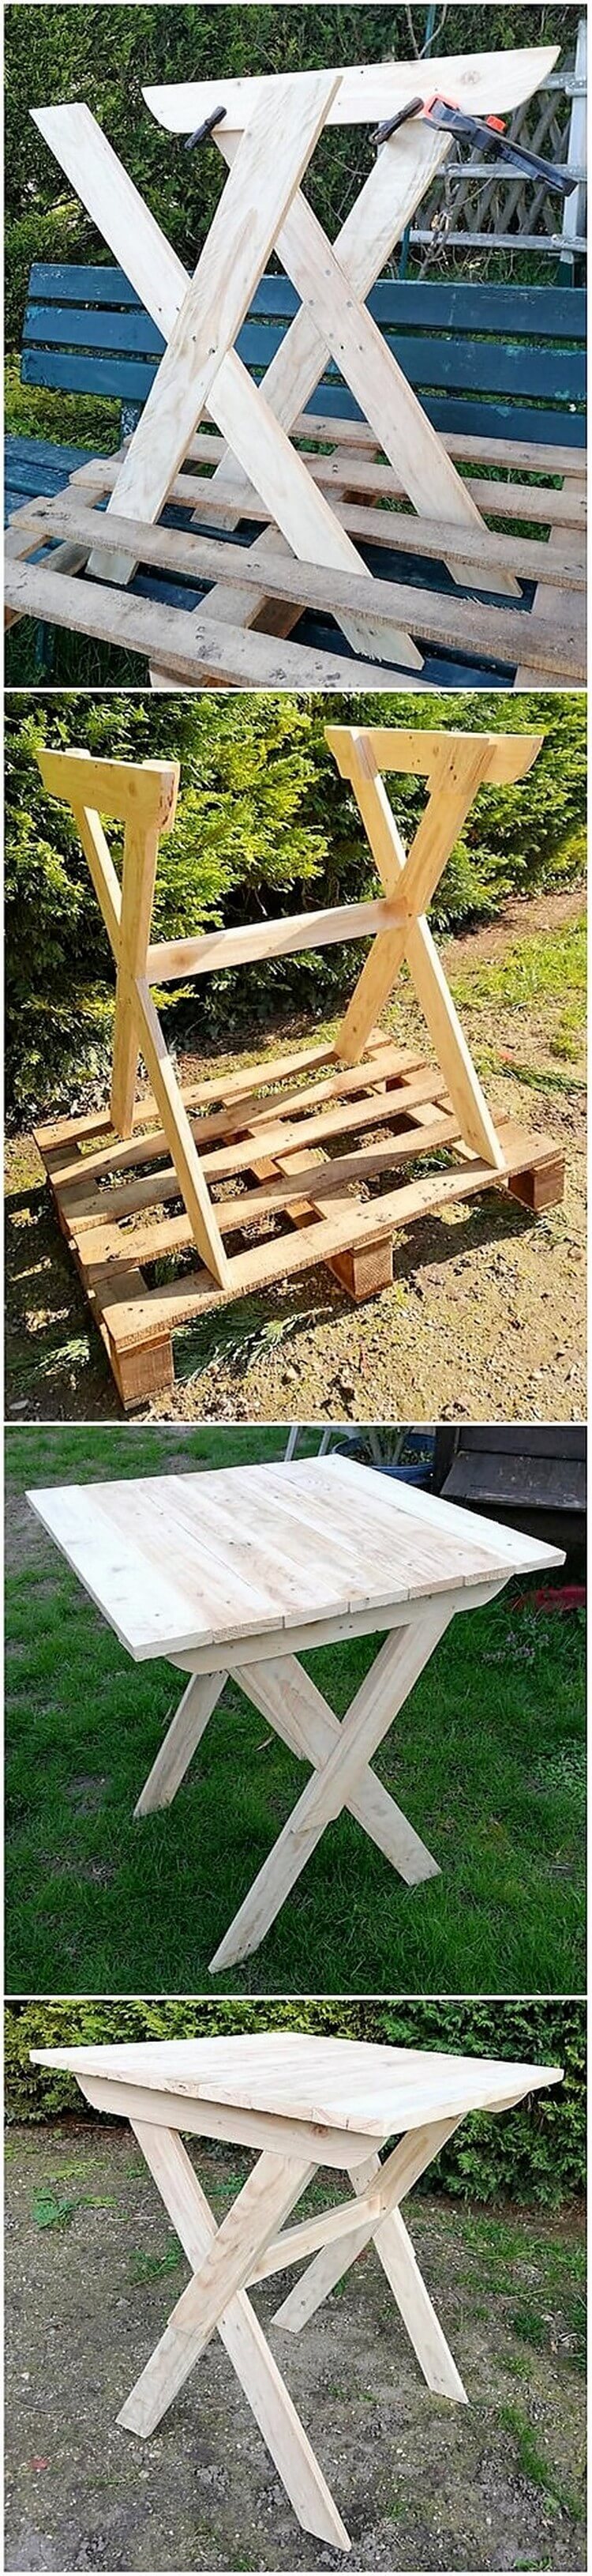 DIY Wood Pallet Table